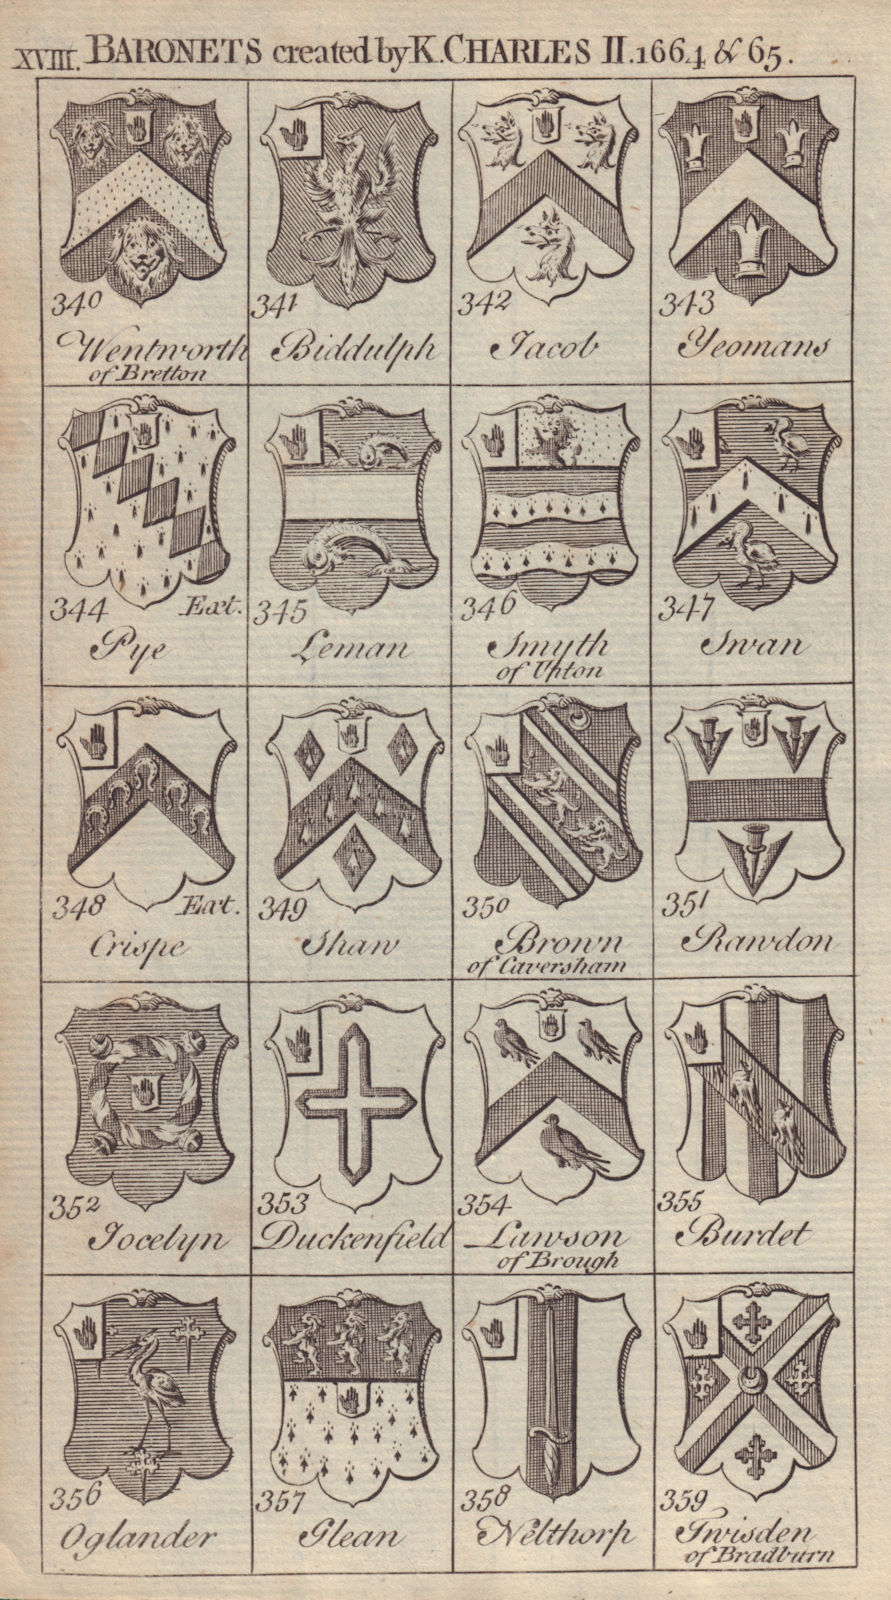 Associate Product Charles II Baronets 1664-65 Biddulph Jacob Yeomans Pye Leman Swan Crispe… 1752